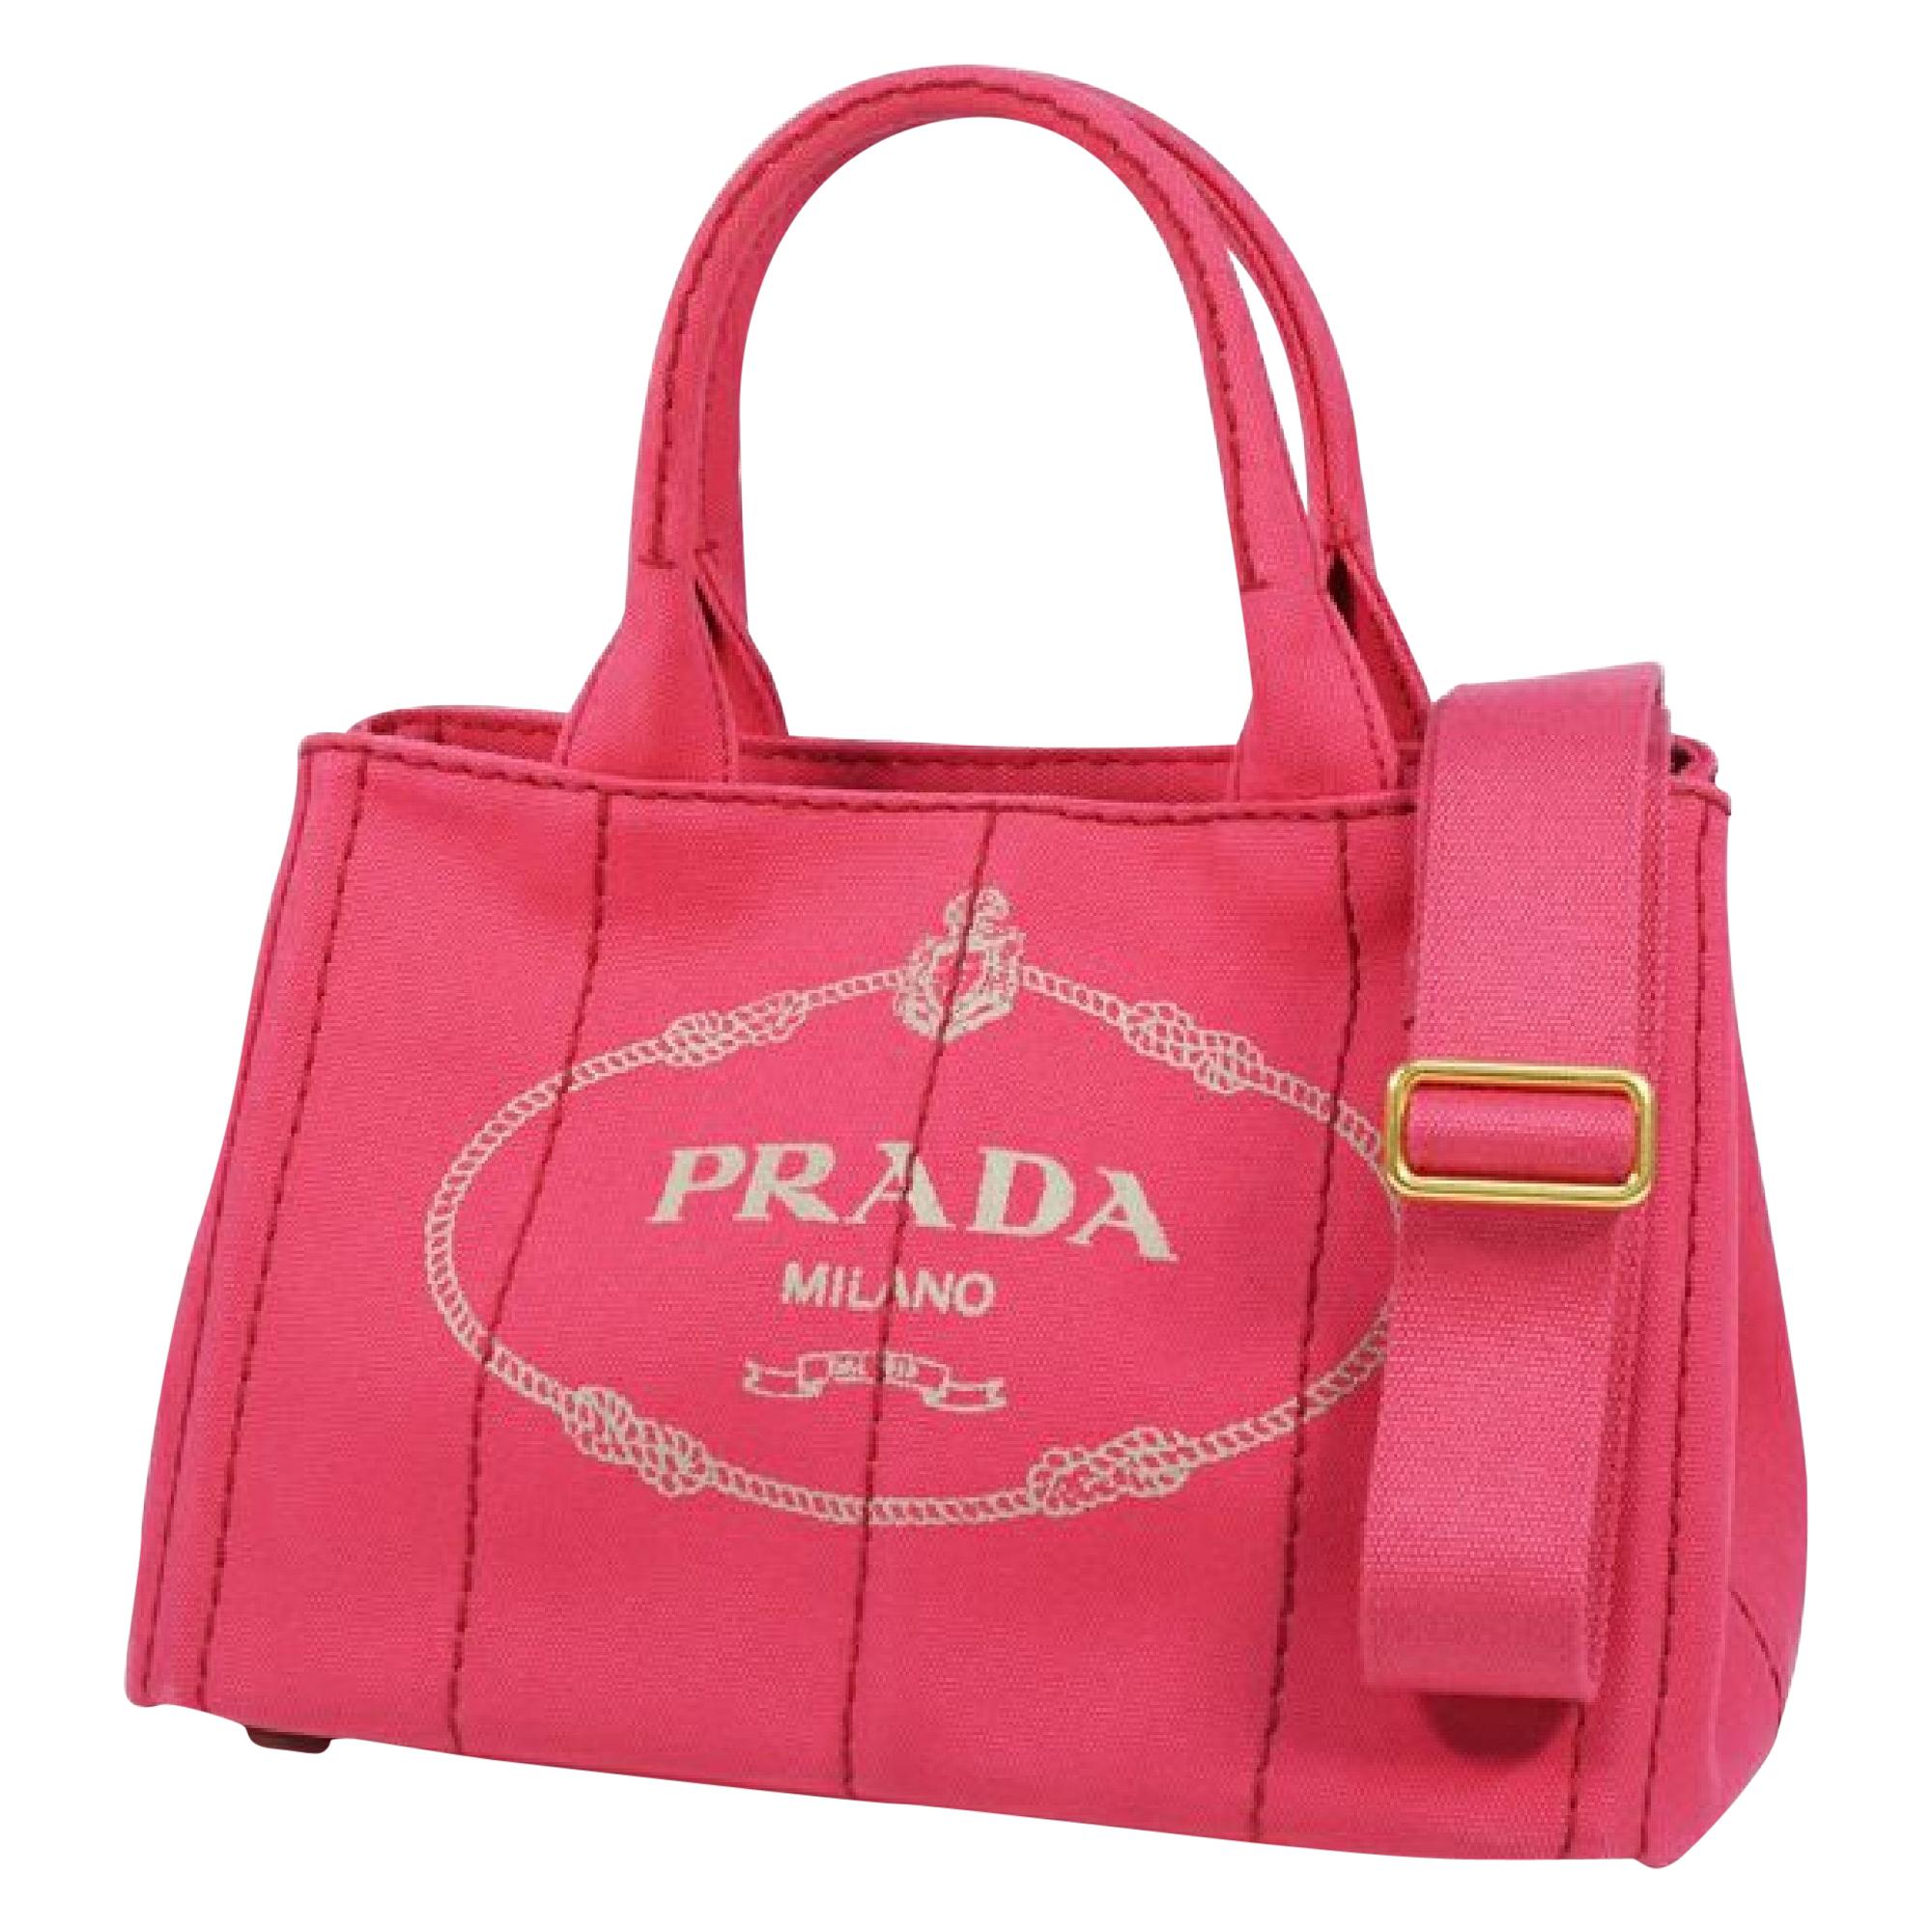 PRADA Canapa2WAY Womens tote bag B2439G Peonia( pink)